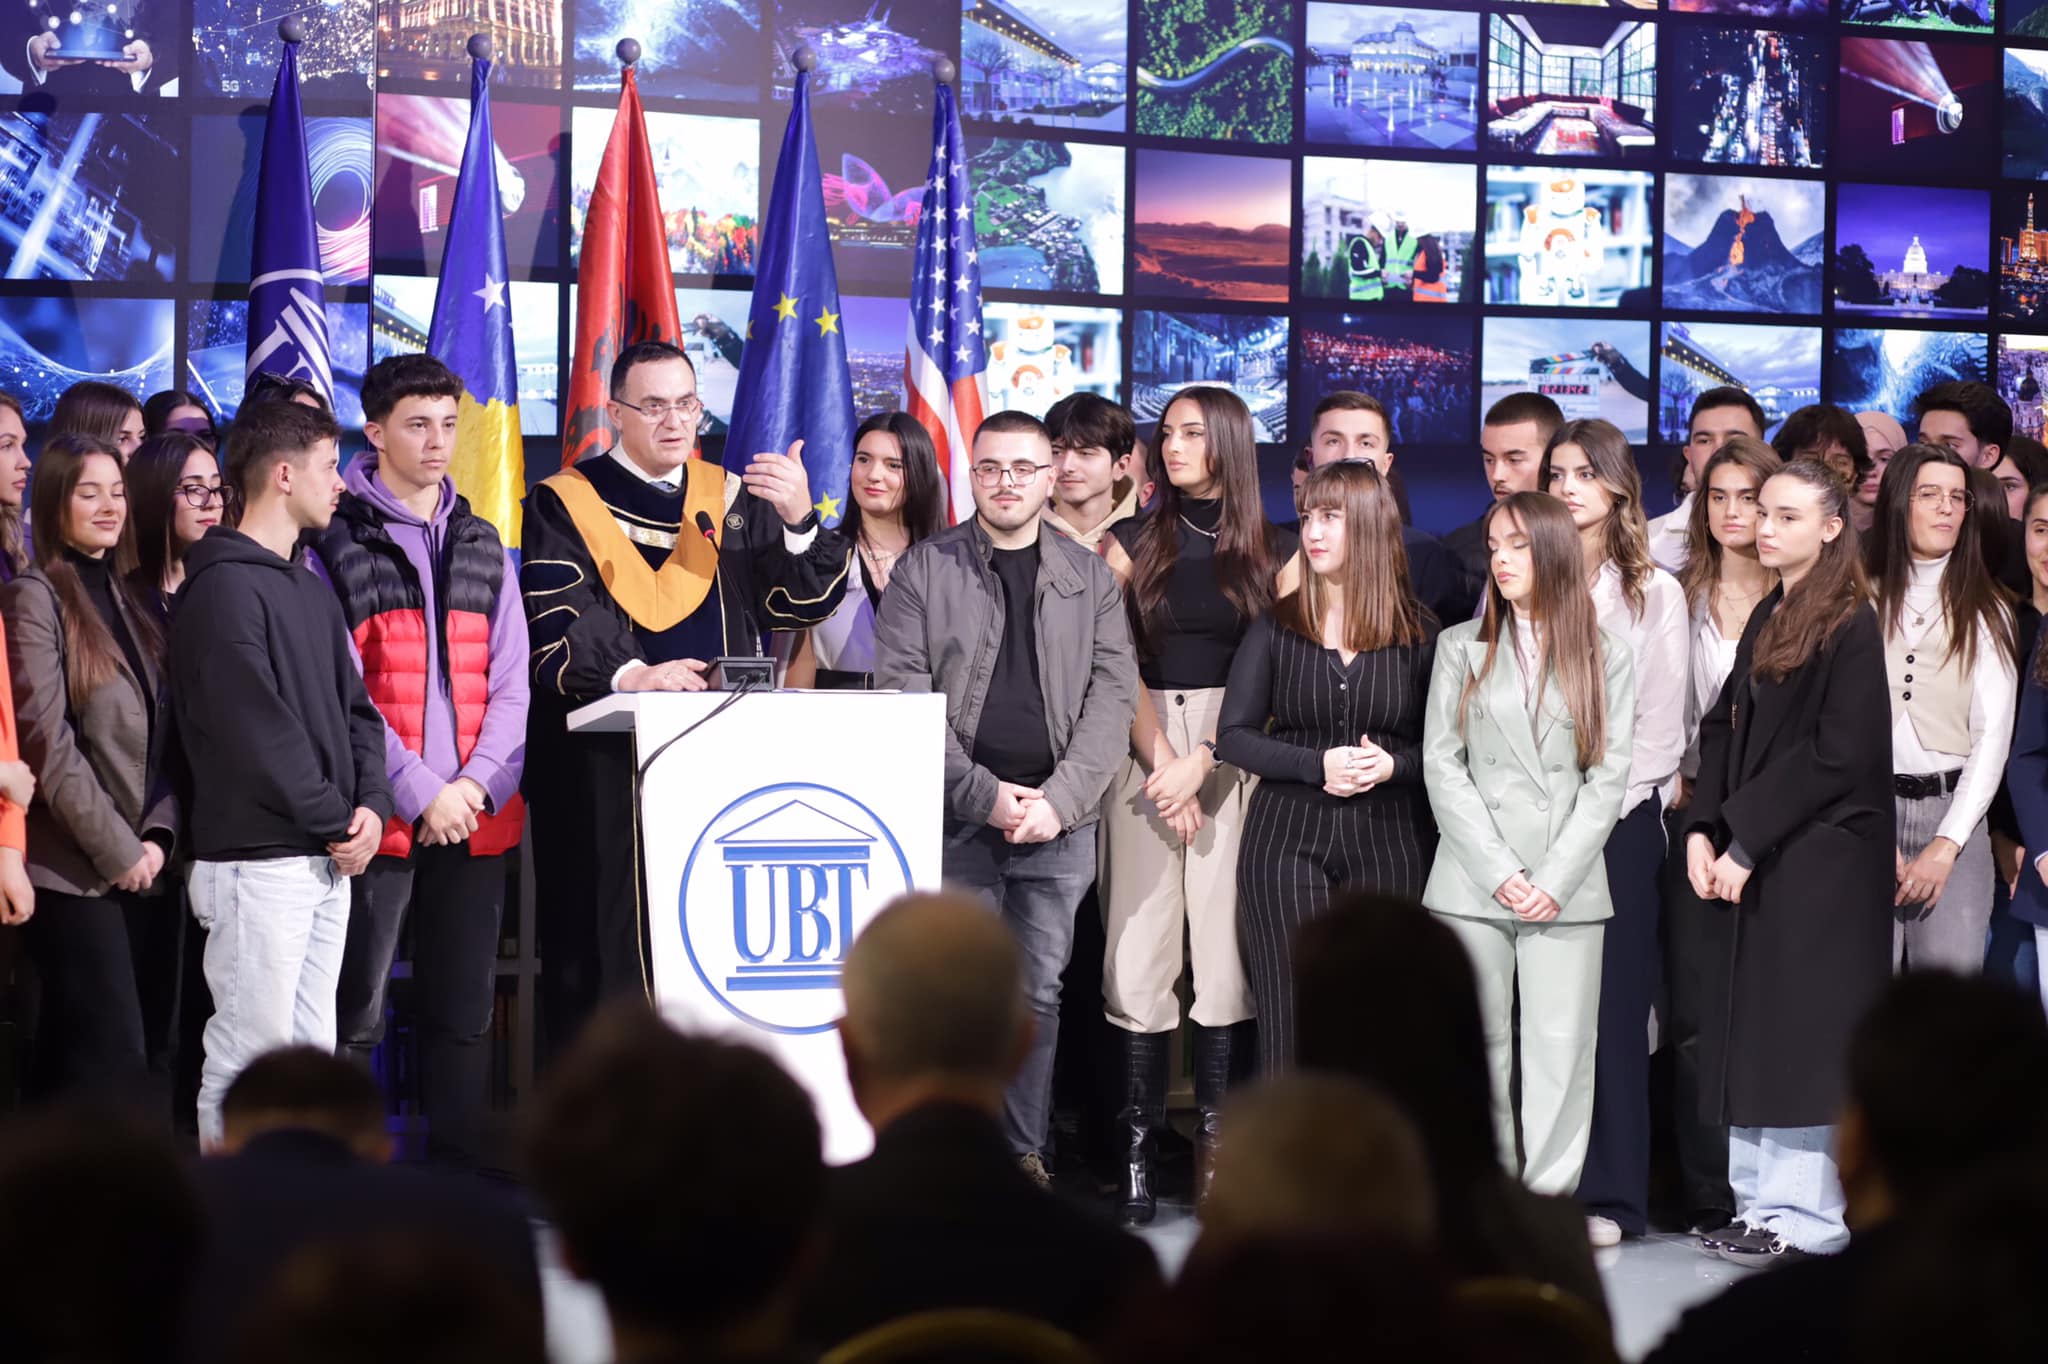 UBT ka shpërblyer mbi 100 studentë të dalluar me bursa studimi në nder të 16-vjetorit të Pavarësisë së Kosovës.